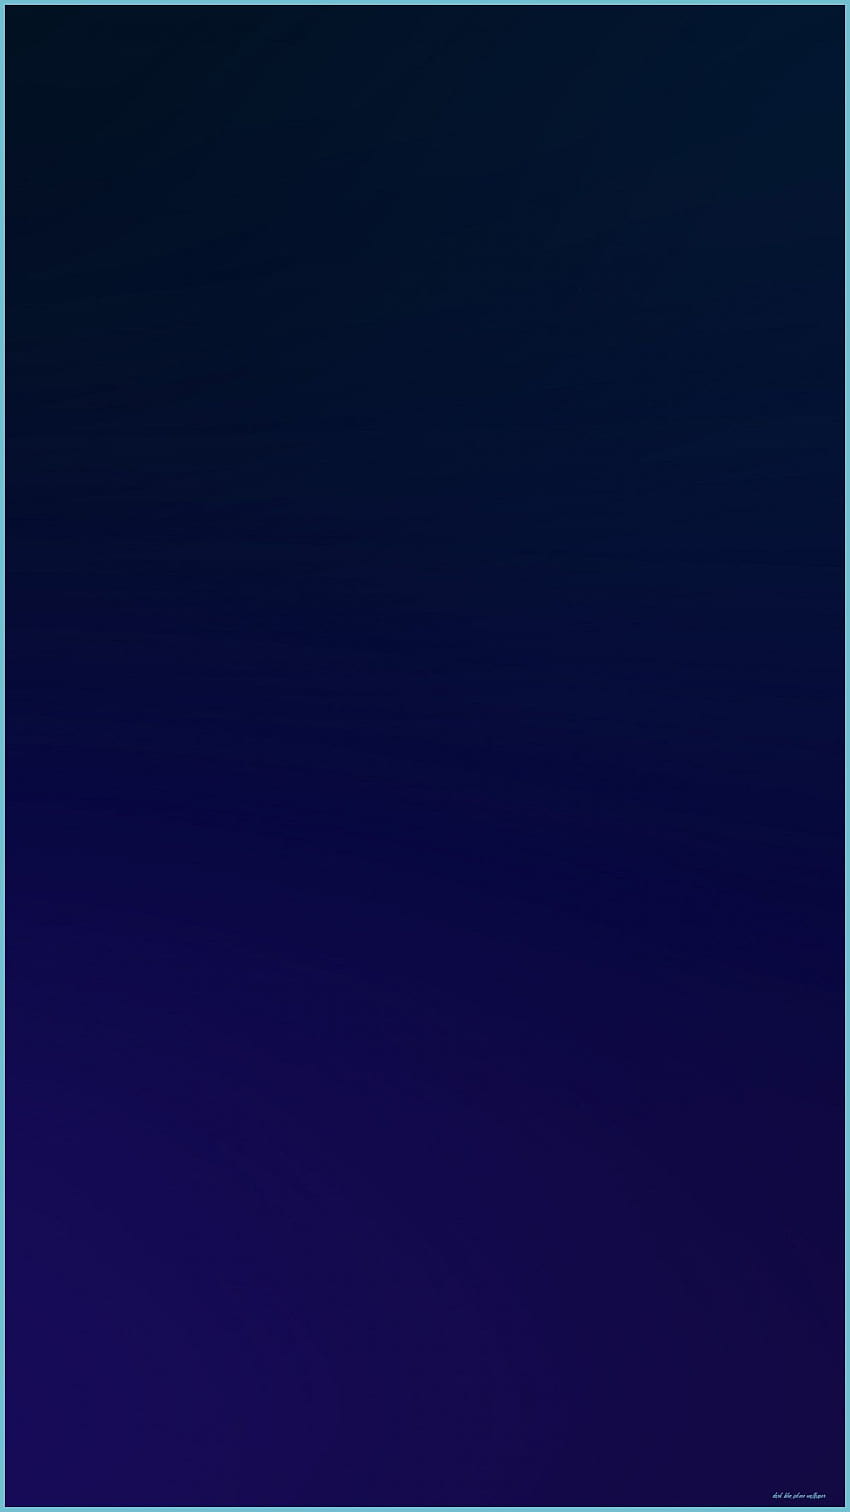 ダークブルー：iPhone 10用のダークブルー、無地のネイビーブルーのiPhone HD電話の壁紙